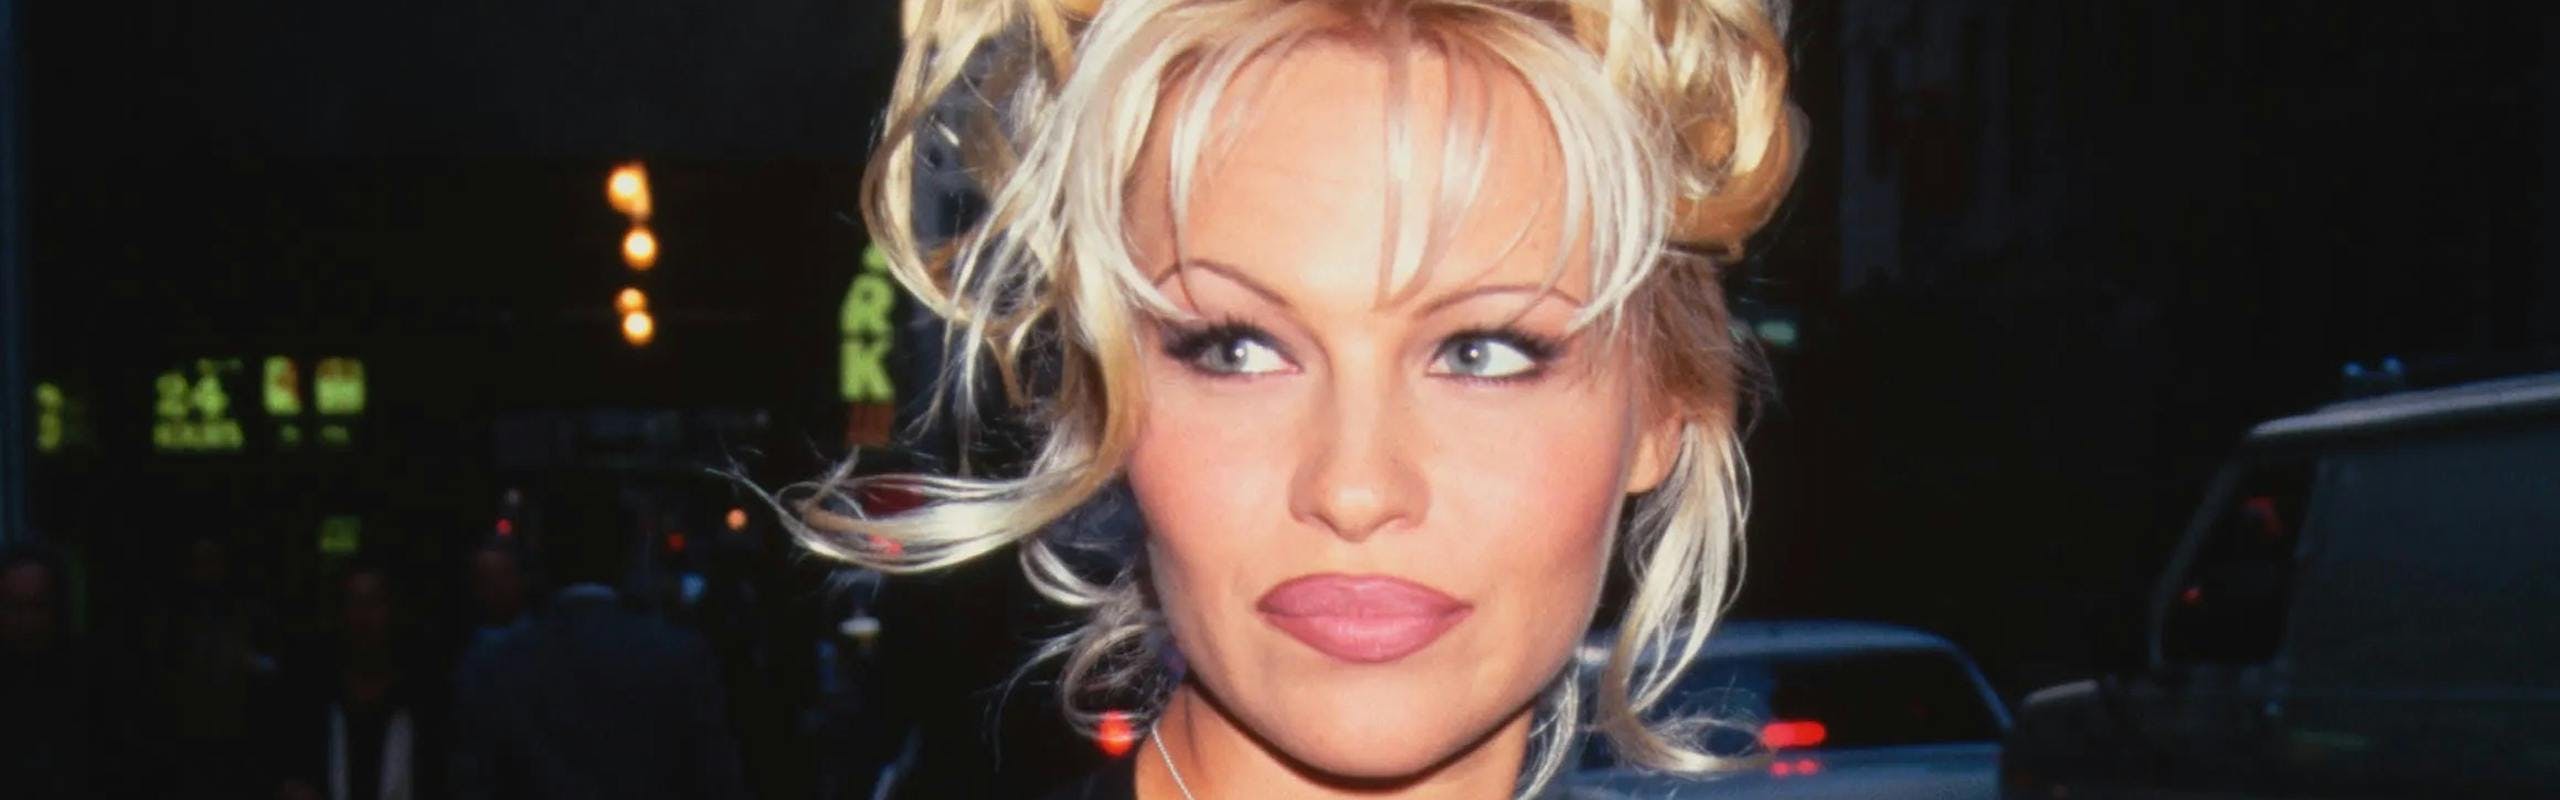 pamela anderson in 1990s makeup look